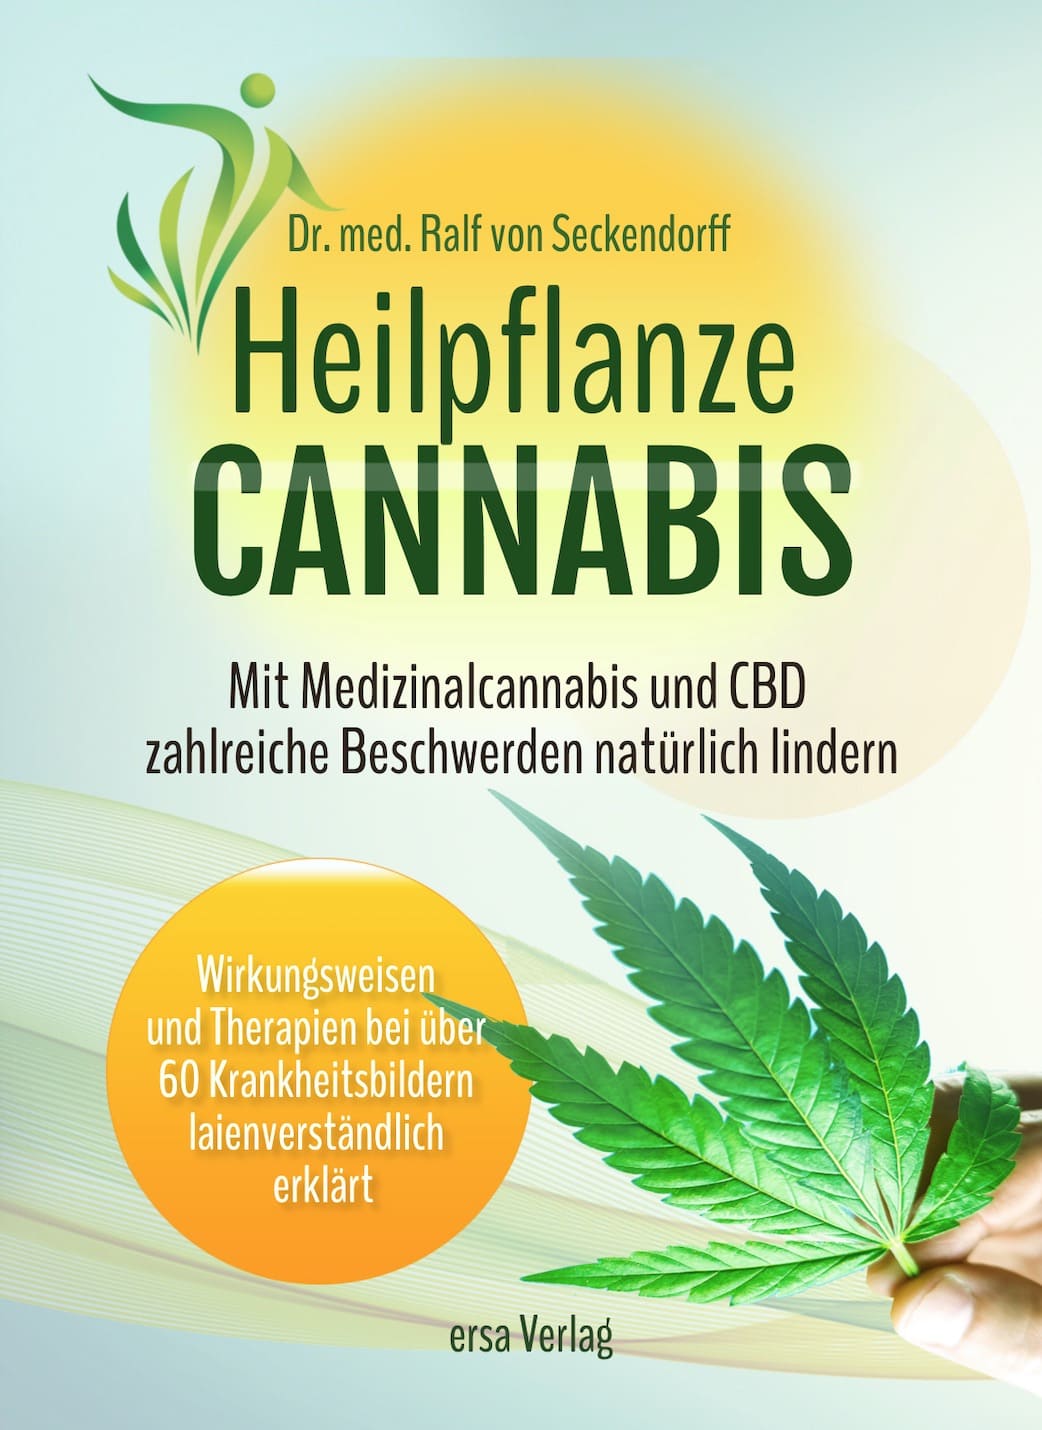 Medizinisches Cannabis richtig anwenden